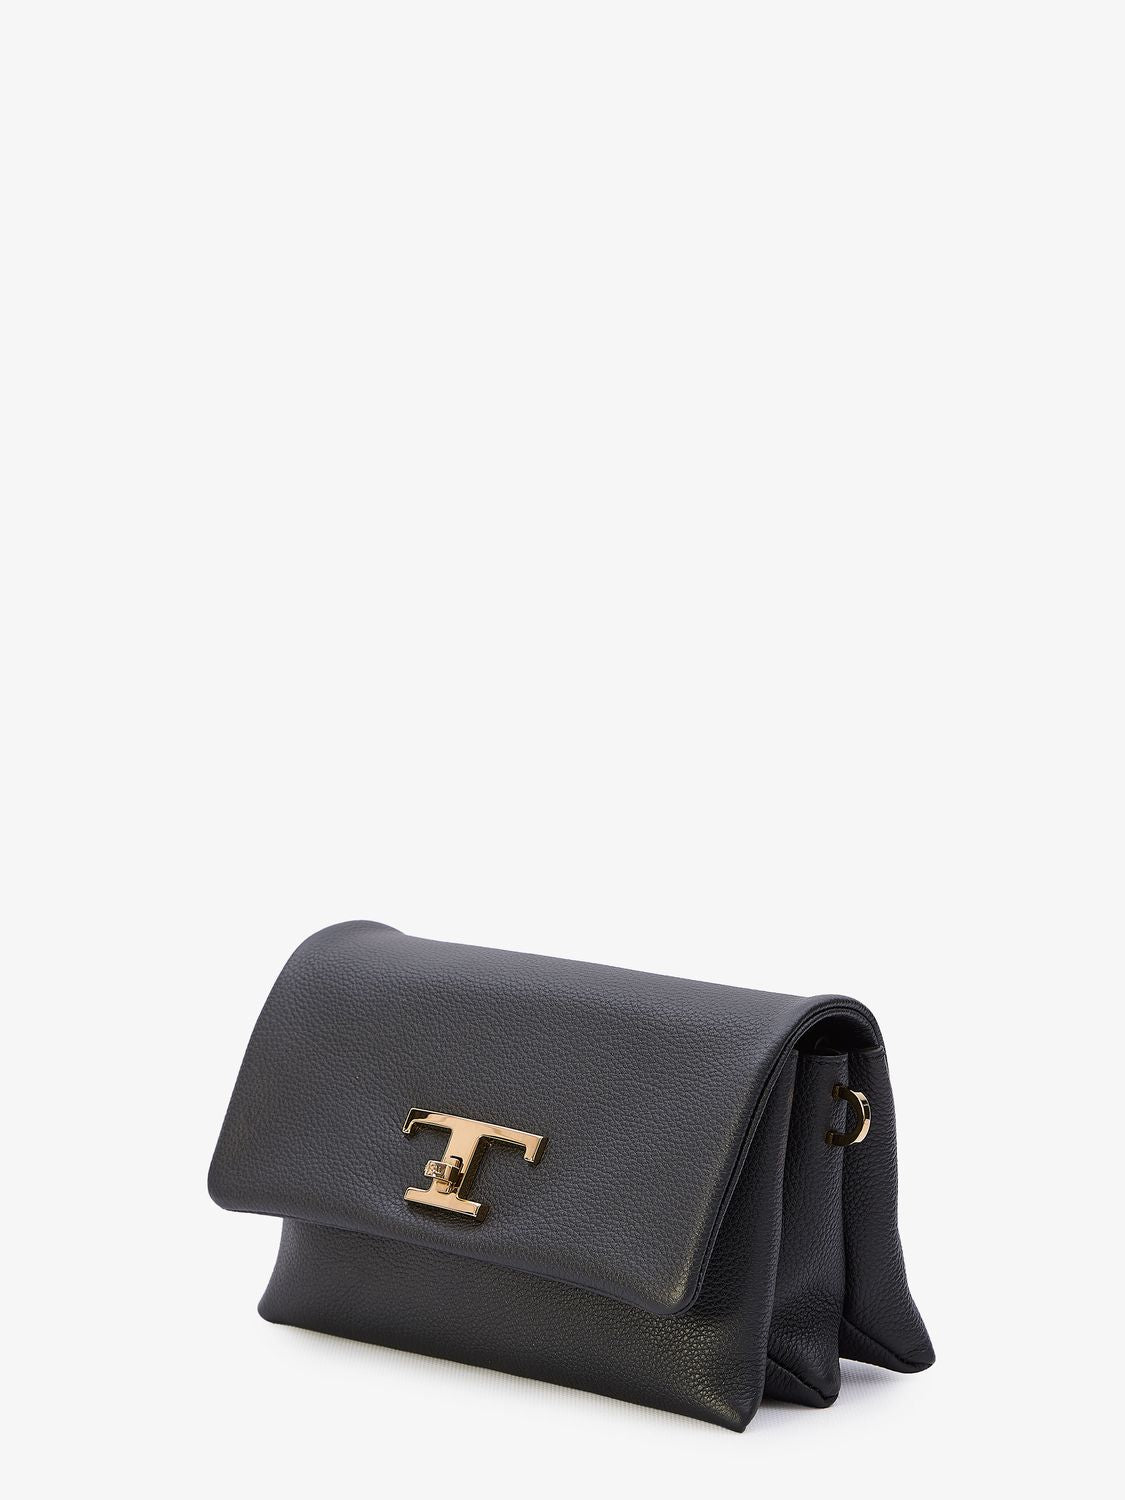 經典黑色粒紋皮革手提包 - T時尚扣鎖設計